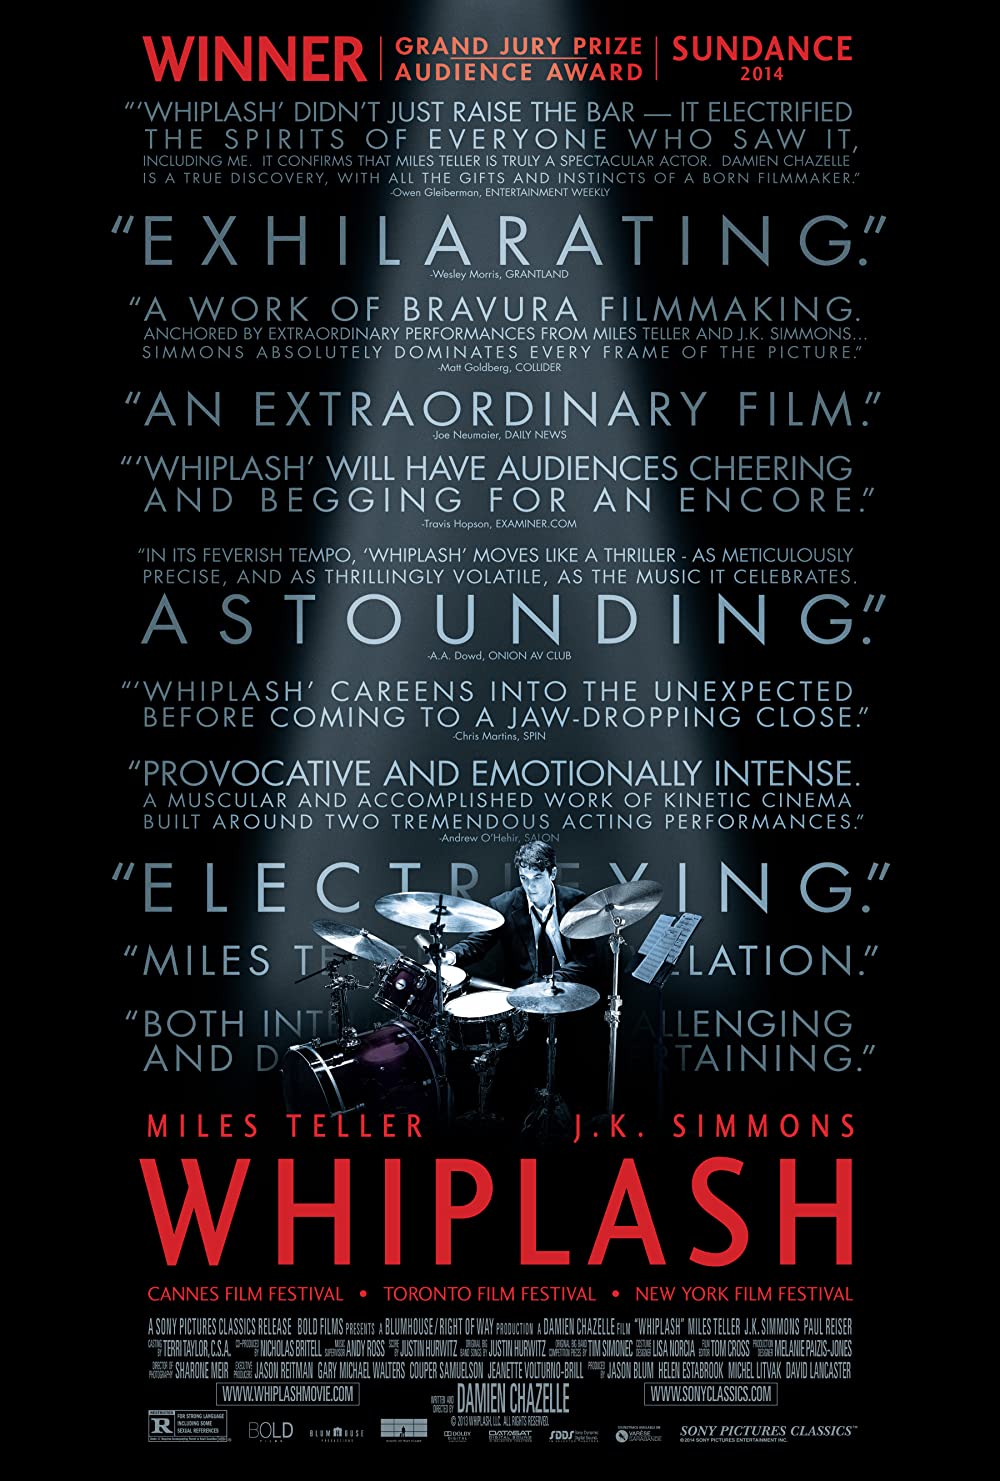 Whiplash ตีให้ลั่น เพราะฝันยังไม่จบ (2014)